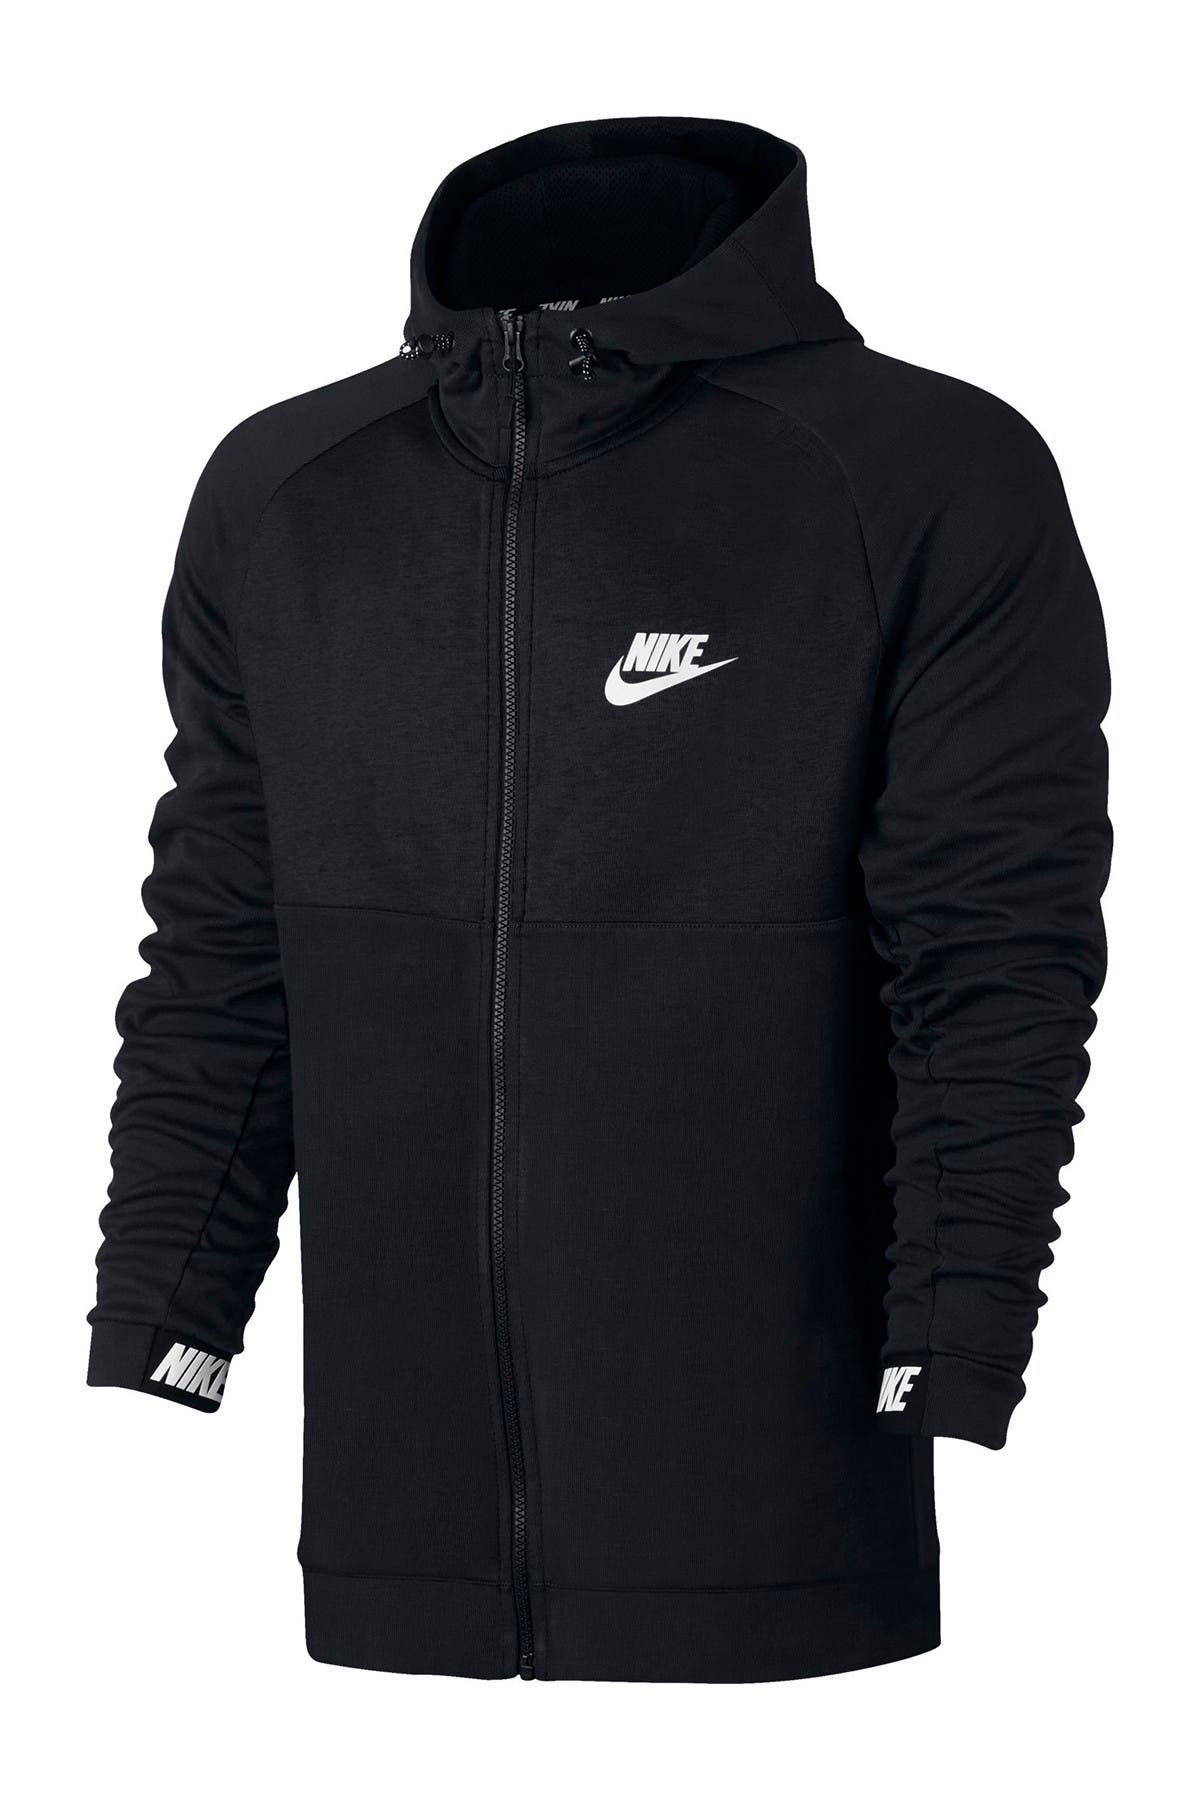 nike sportswear advance 15 hoodie